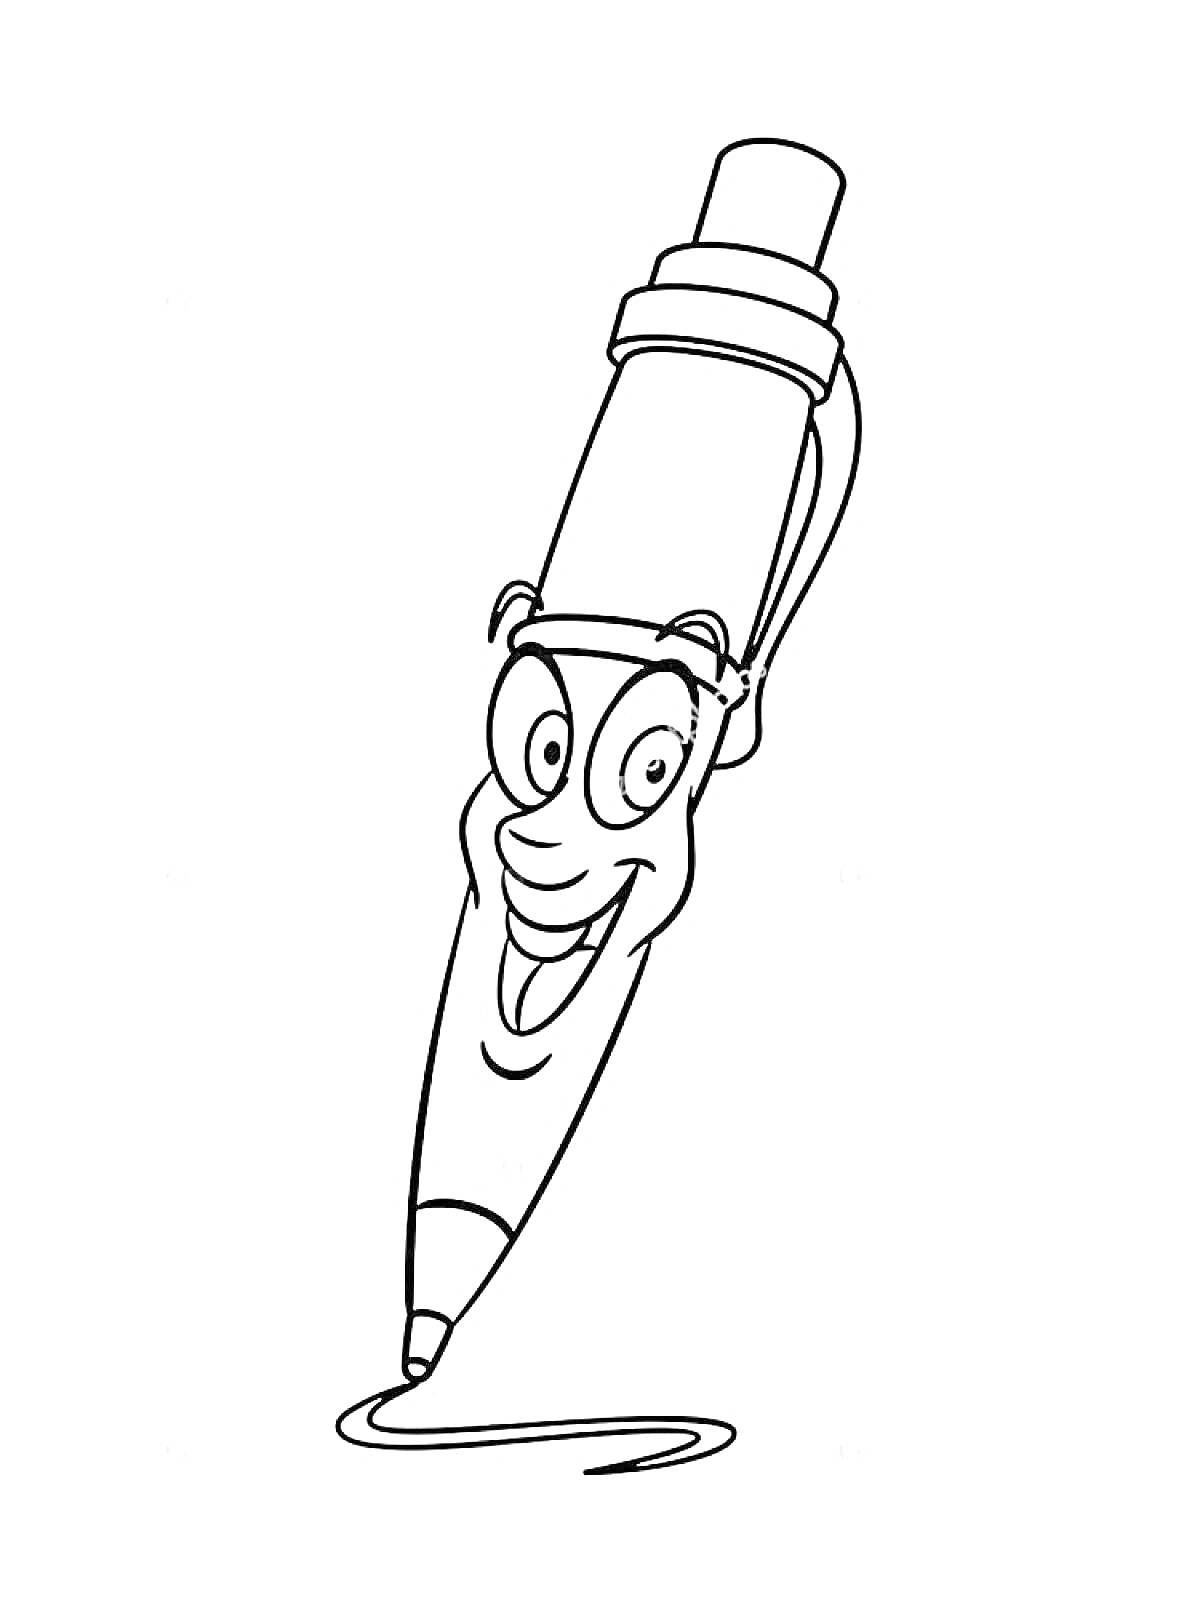 Ожившая ручка улыбается и рисует линию